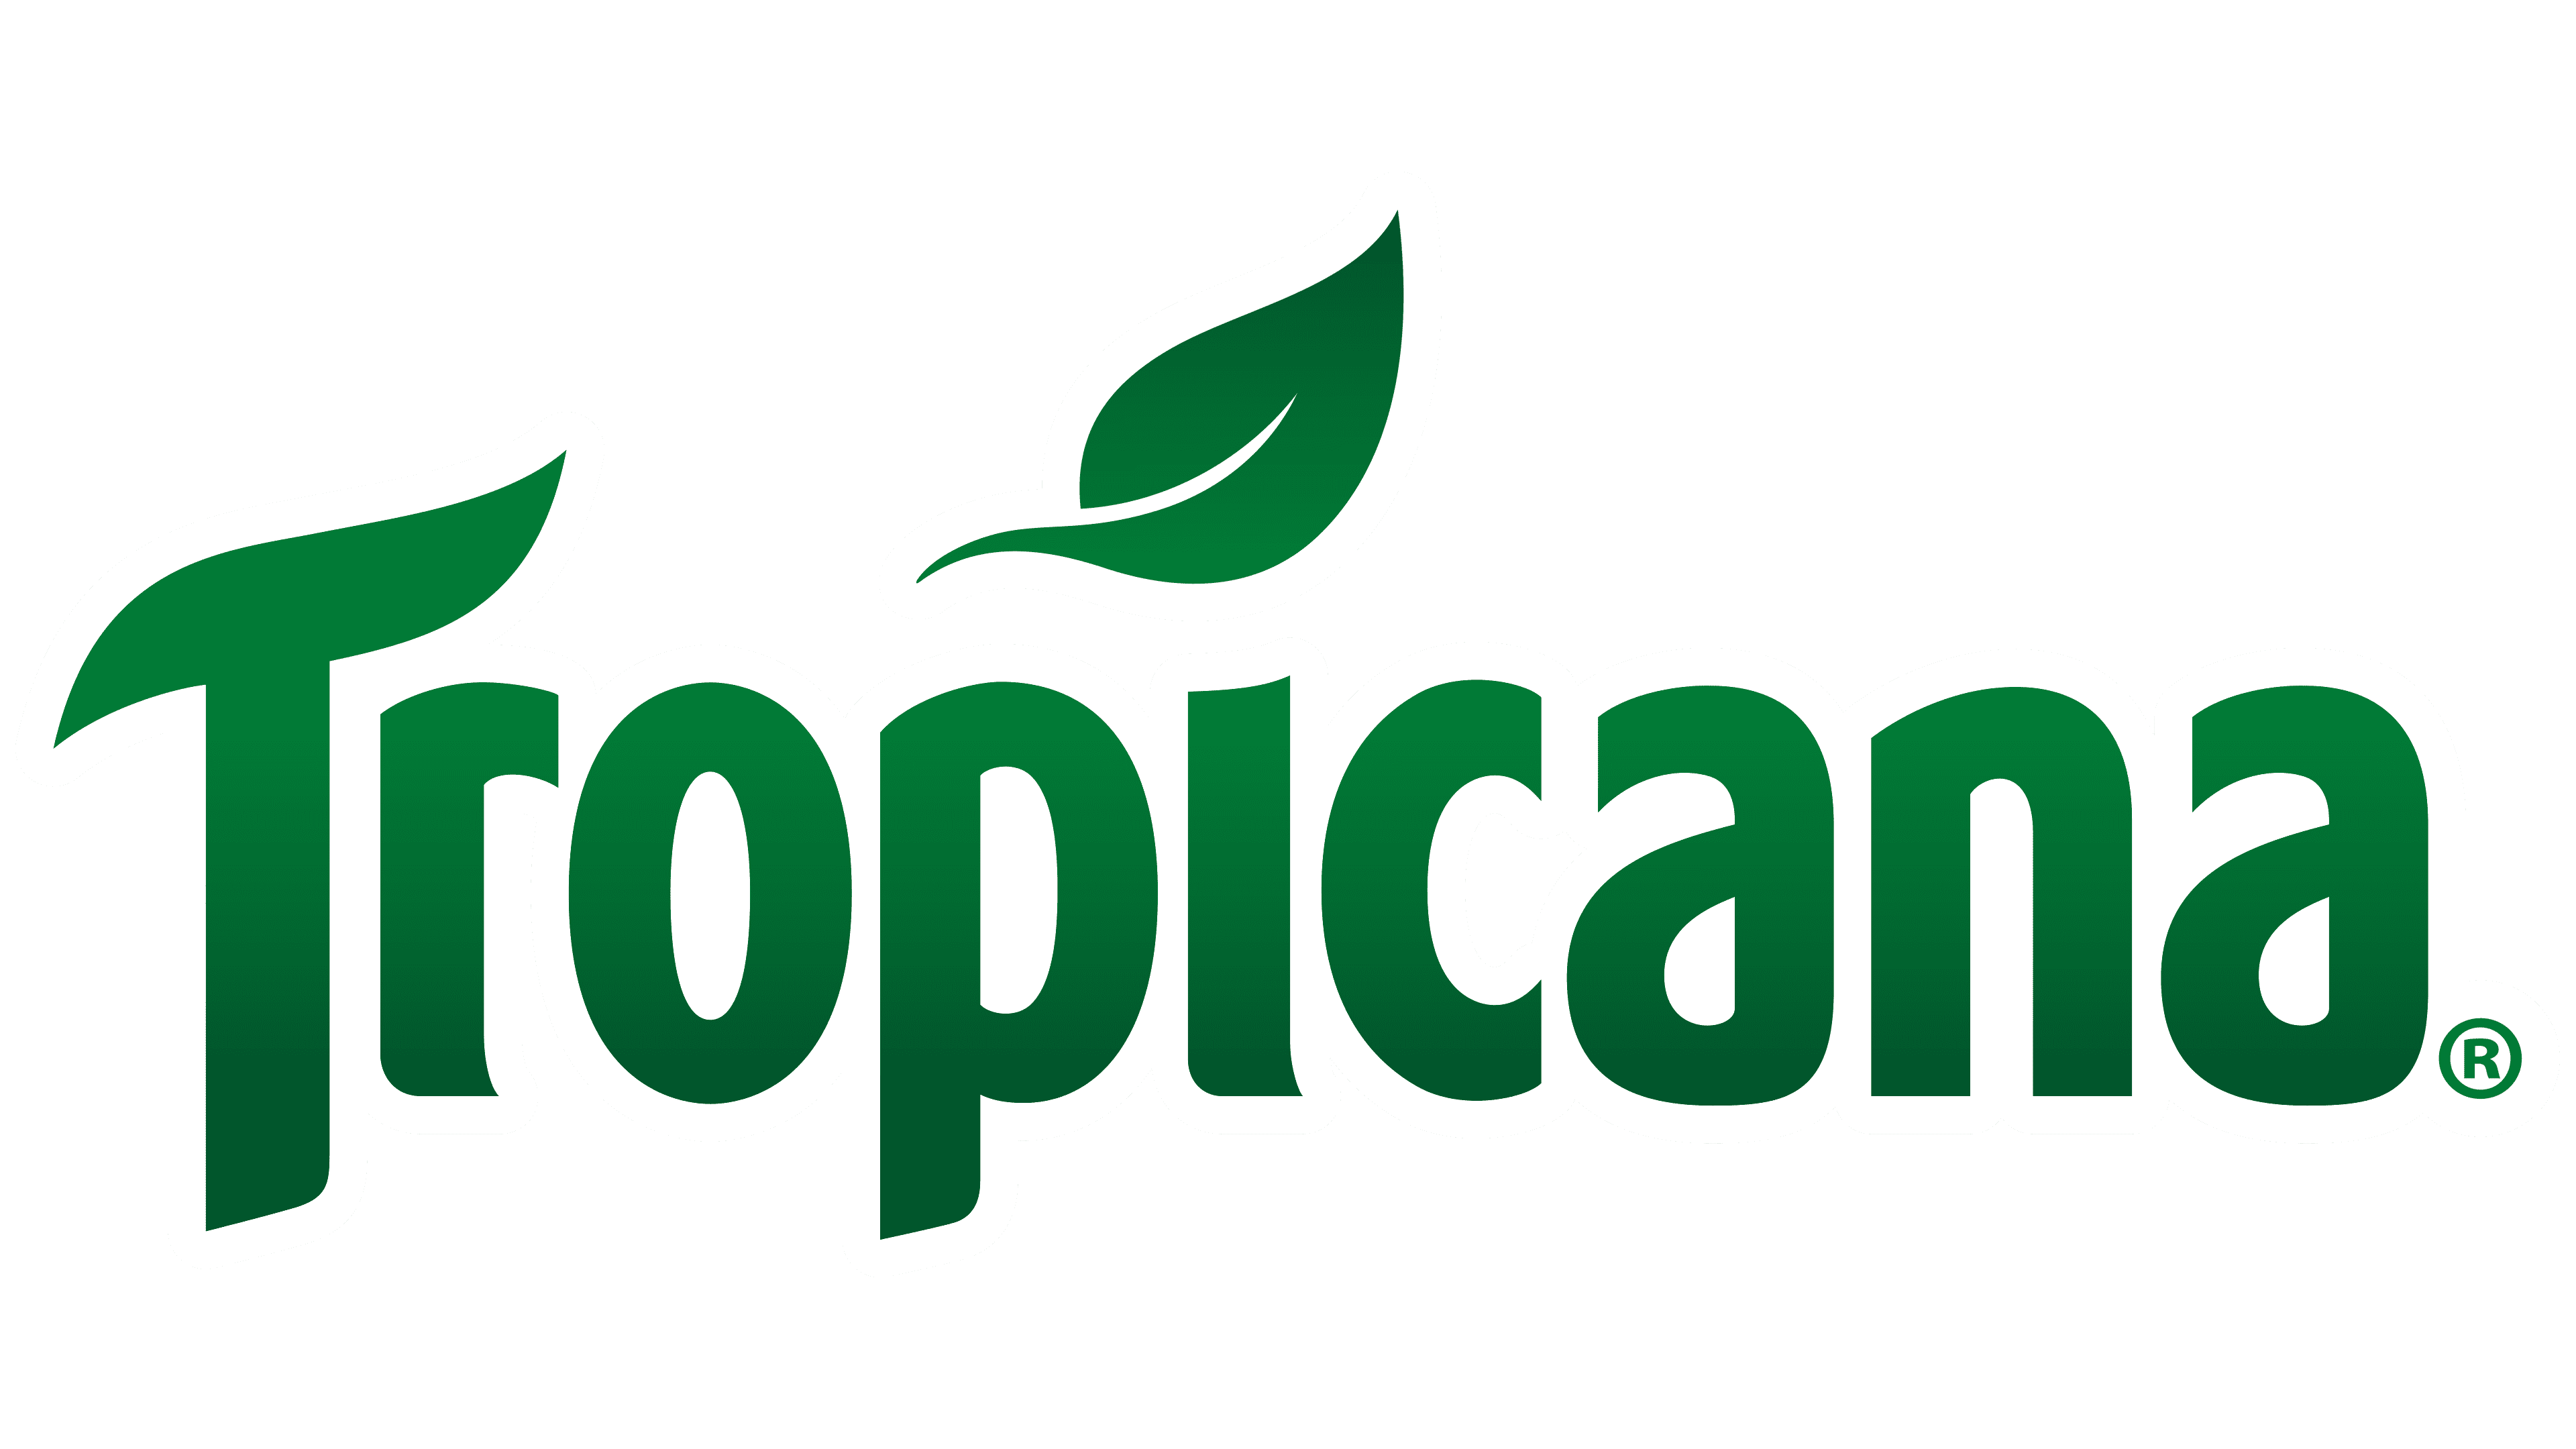 Tropicana-Logo